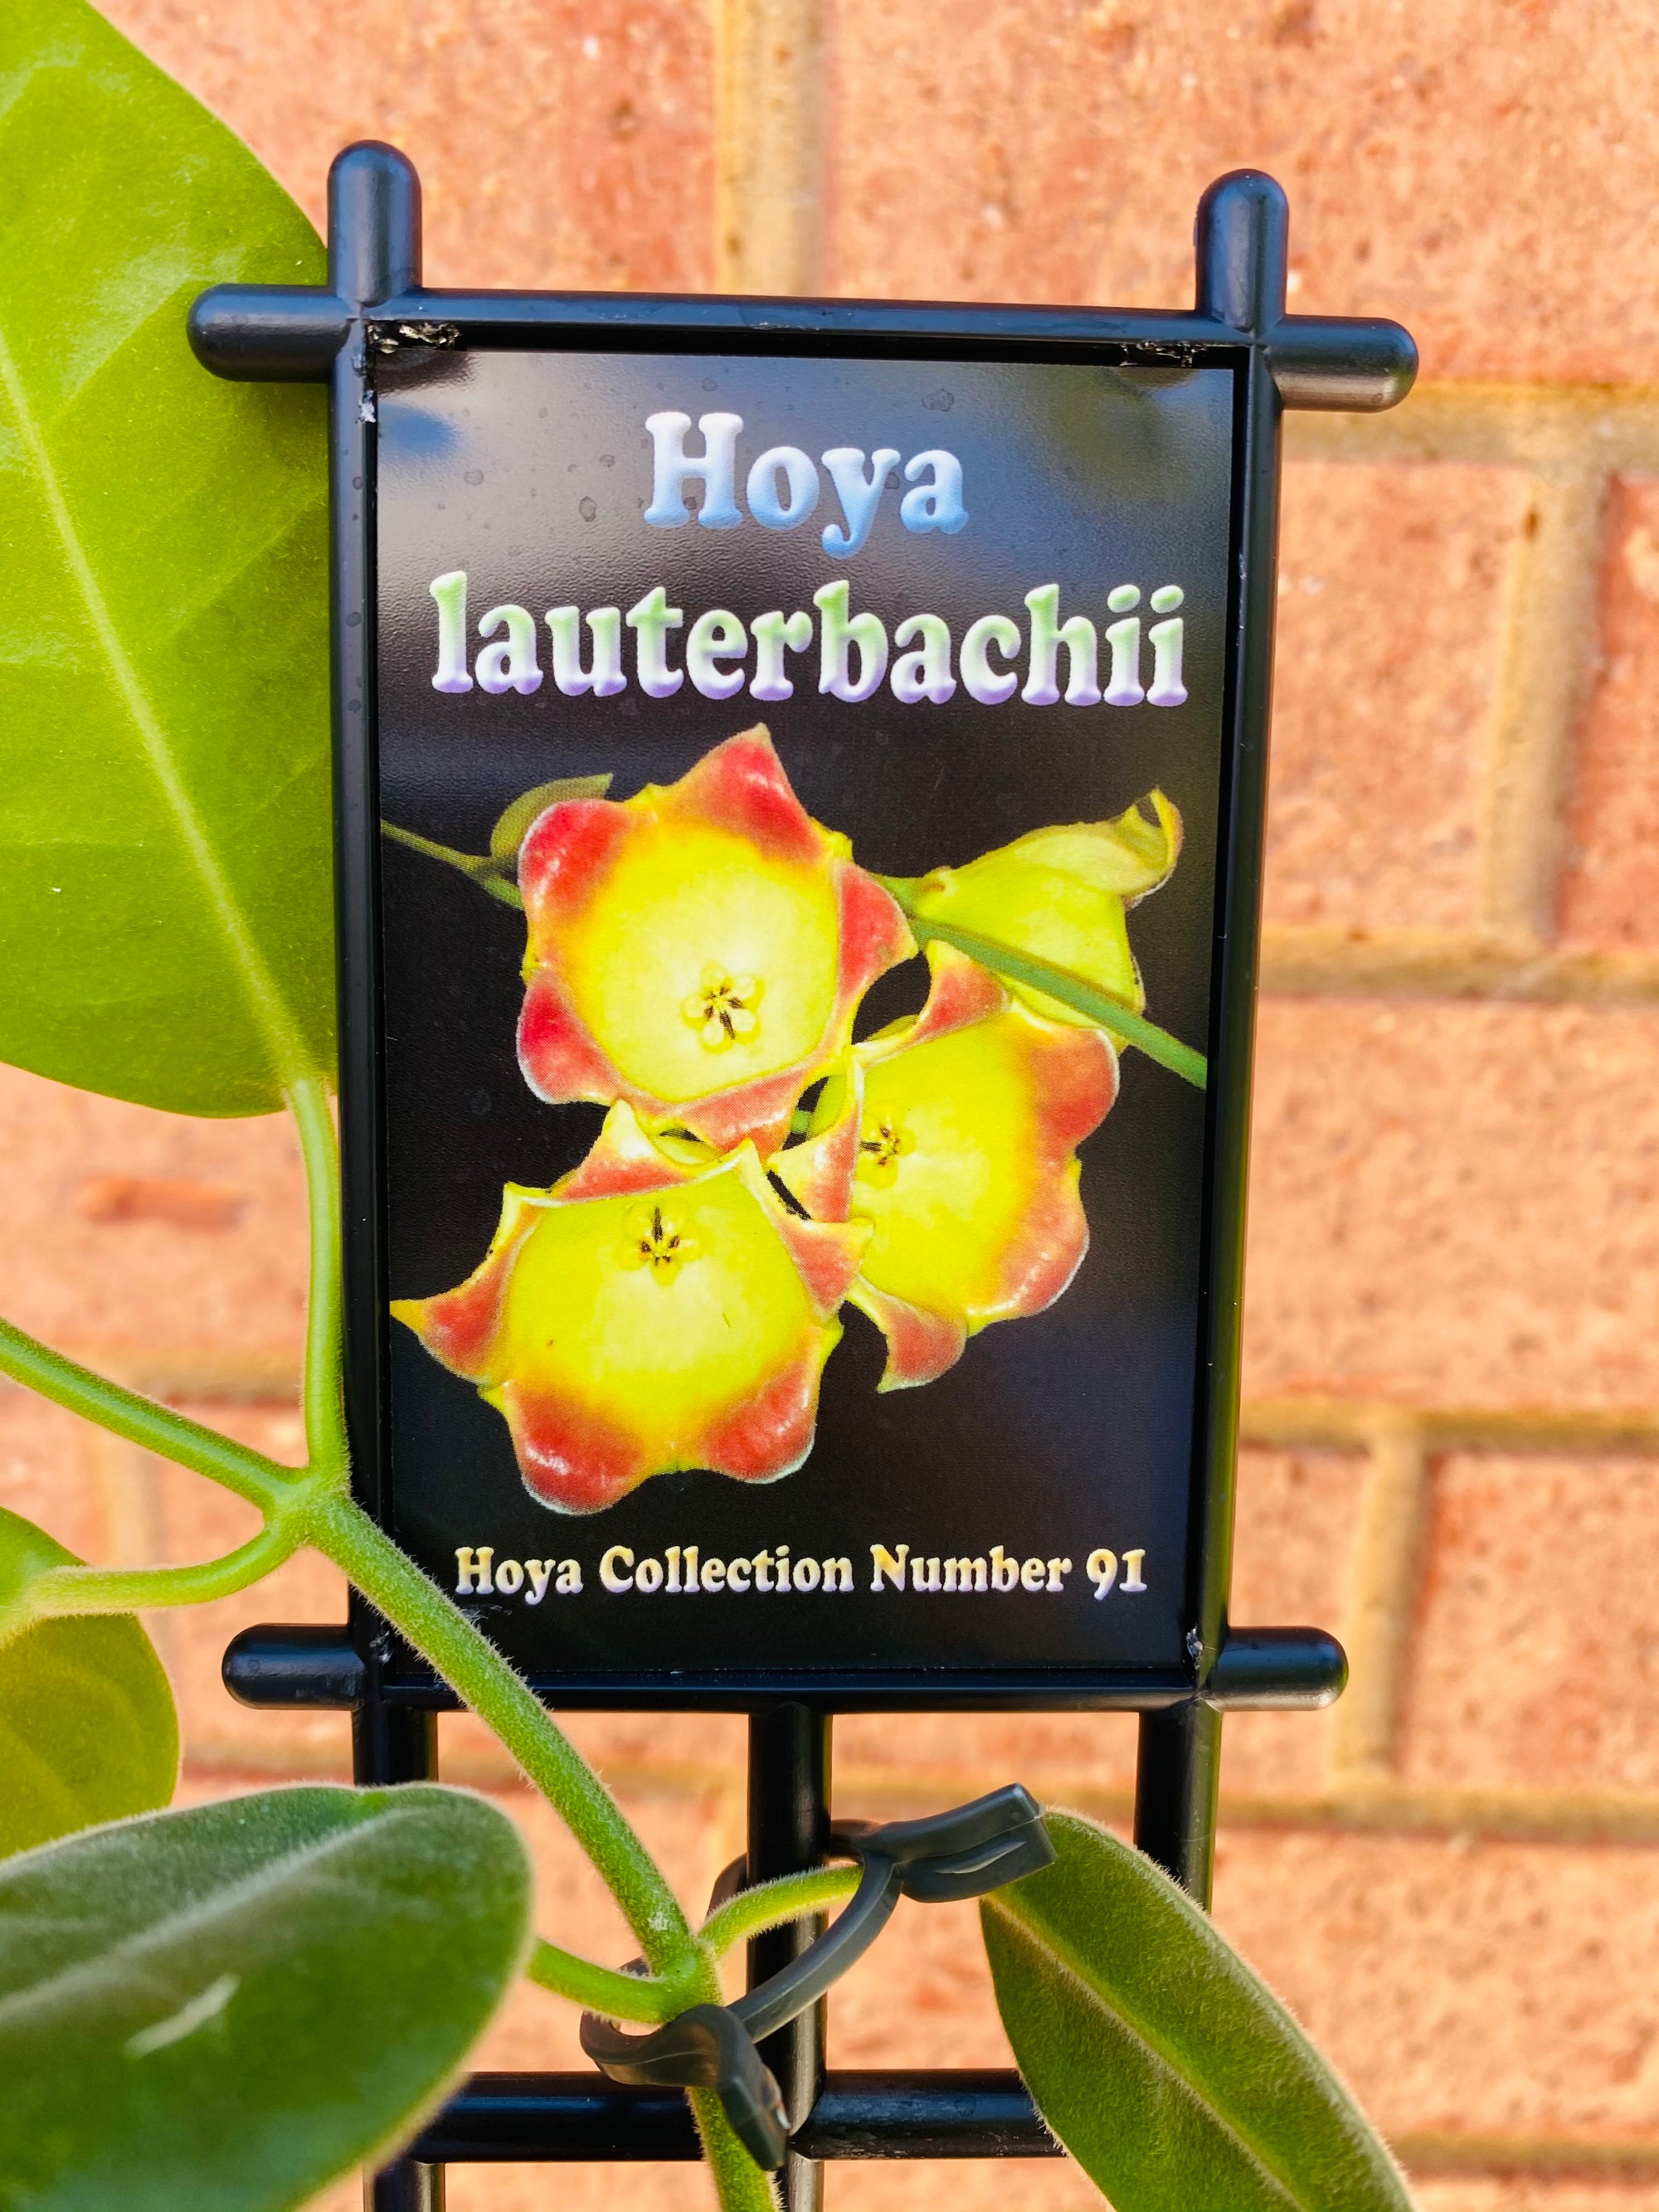 Hoya - Lauterbachii Collection No. 91